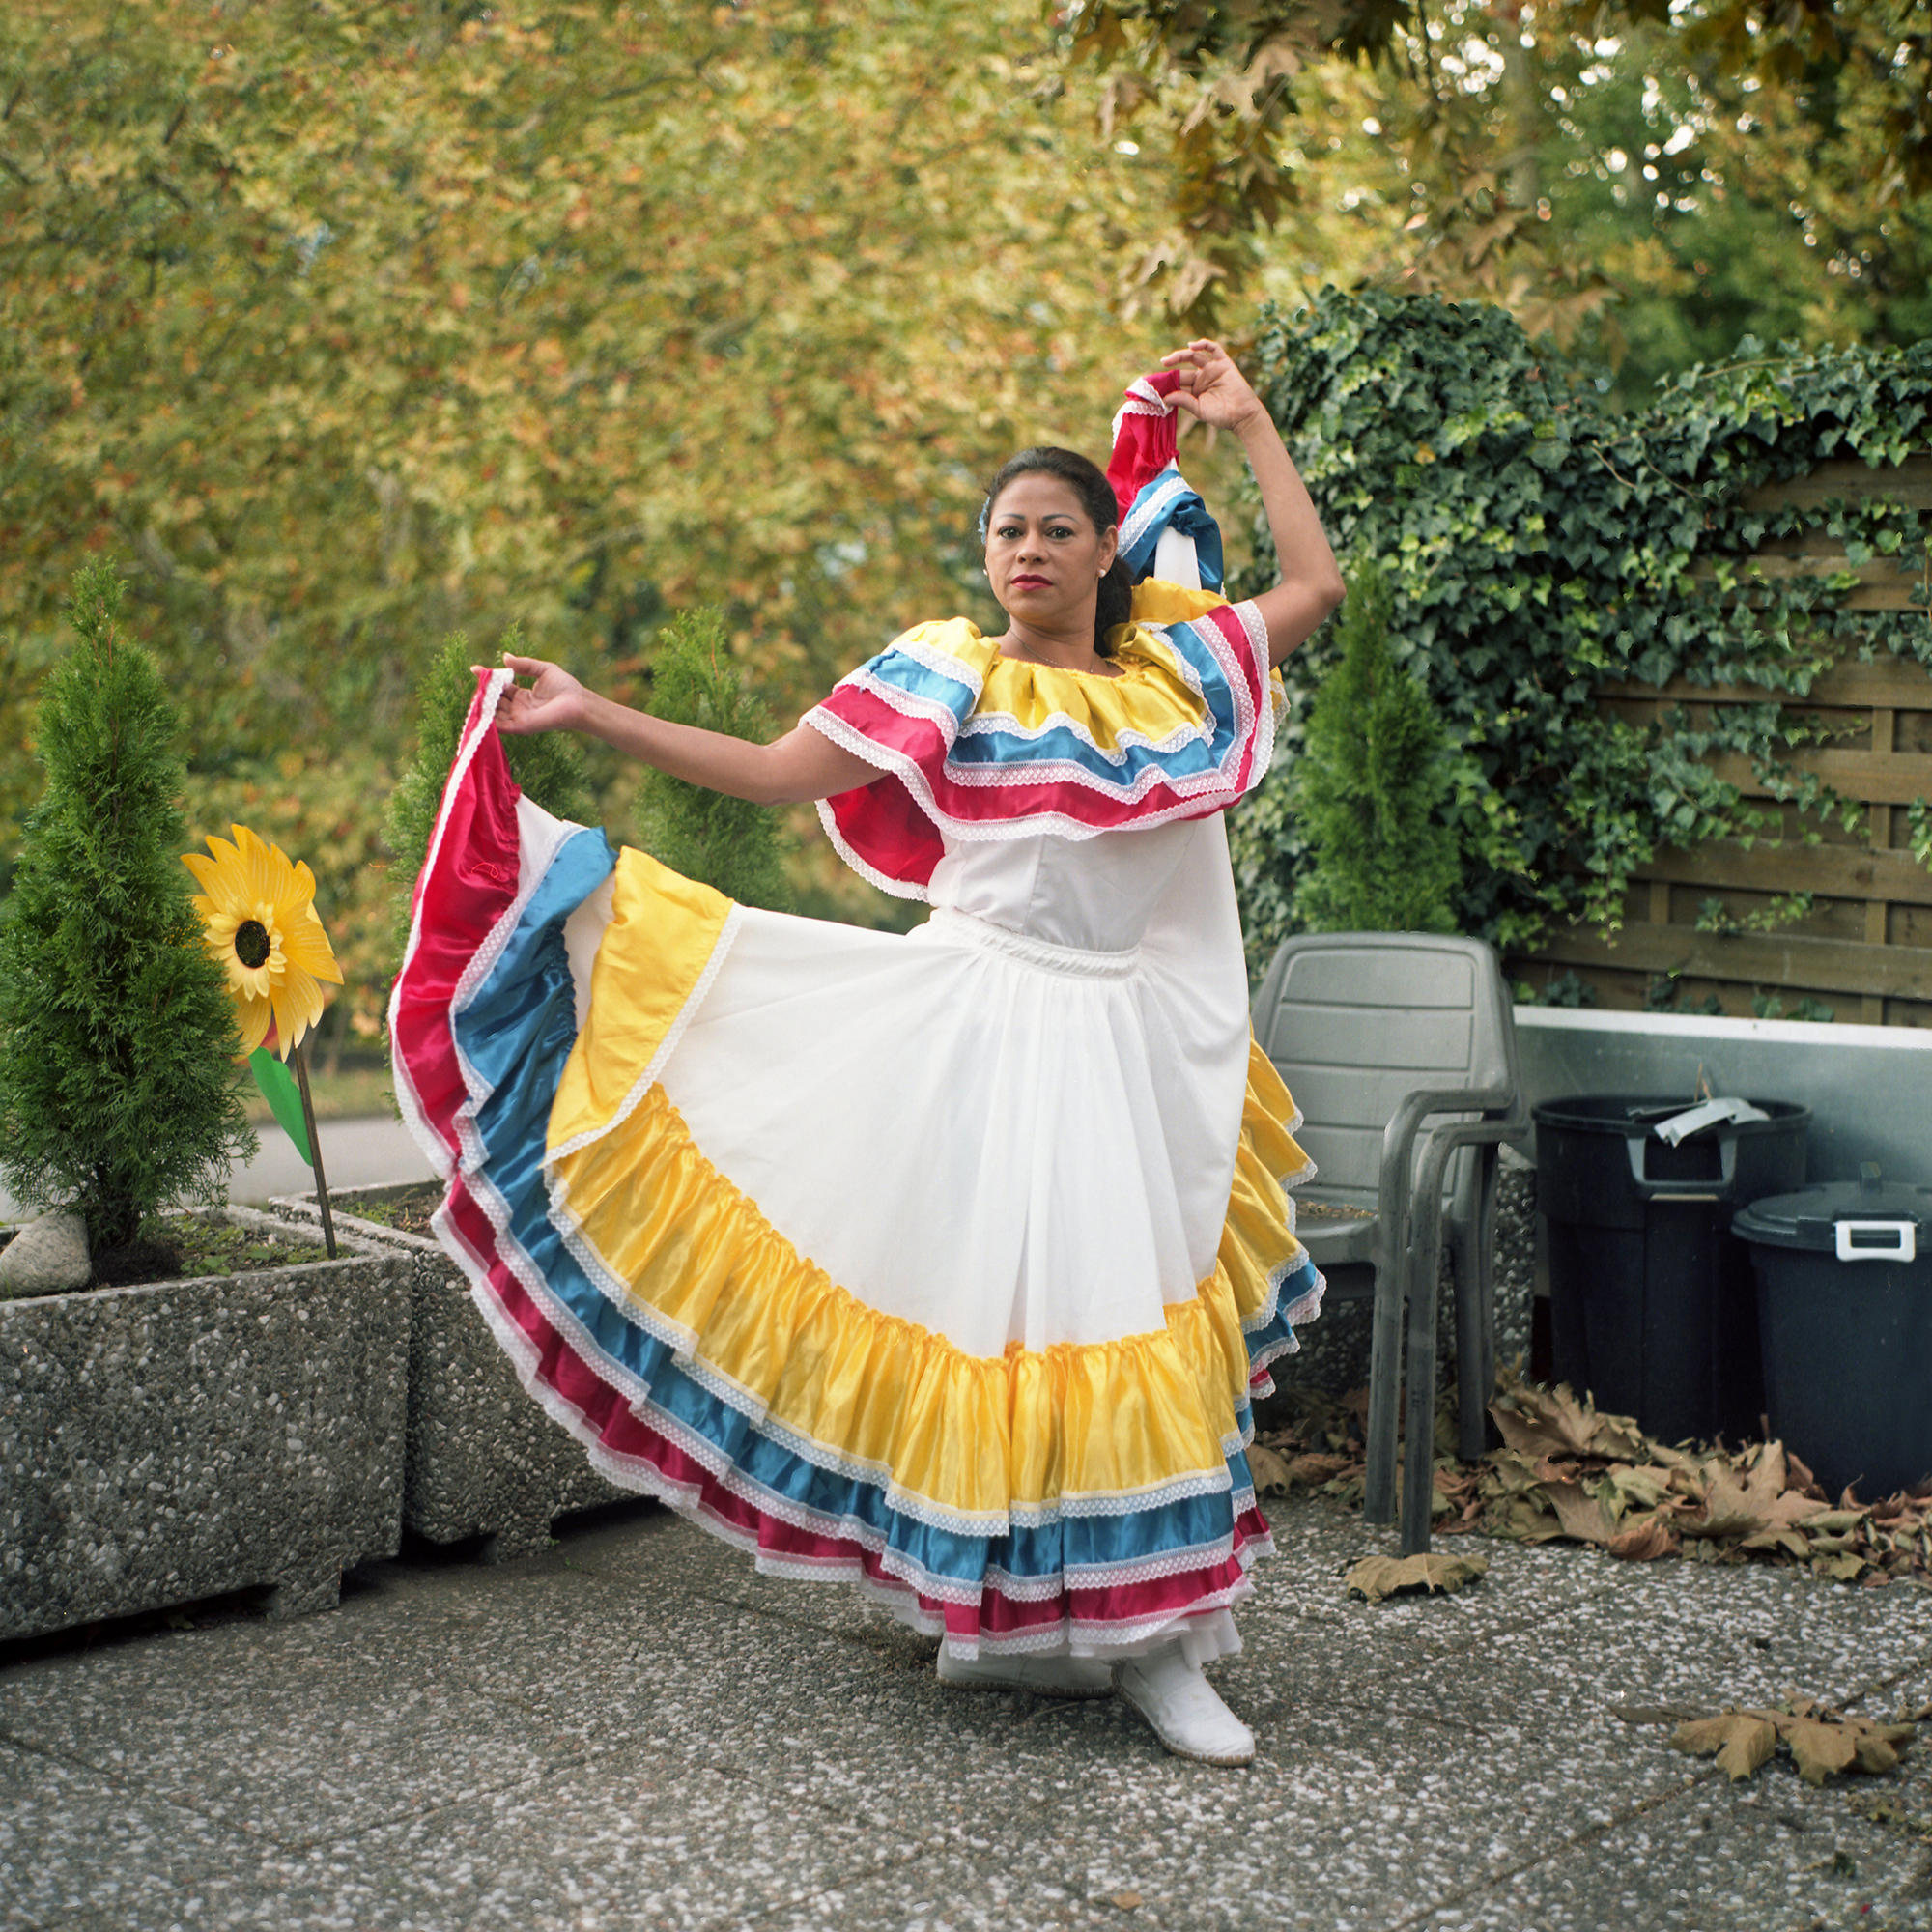 Mujer con vestimenta típica de Venezuela: blusa y falda blancas con olanes en colores